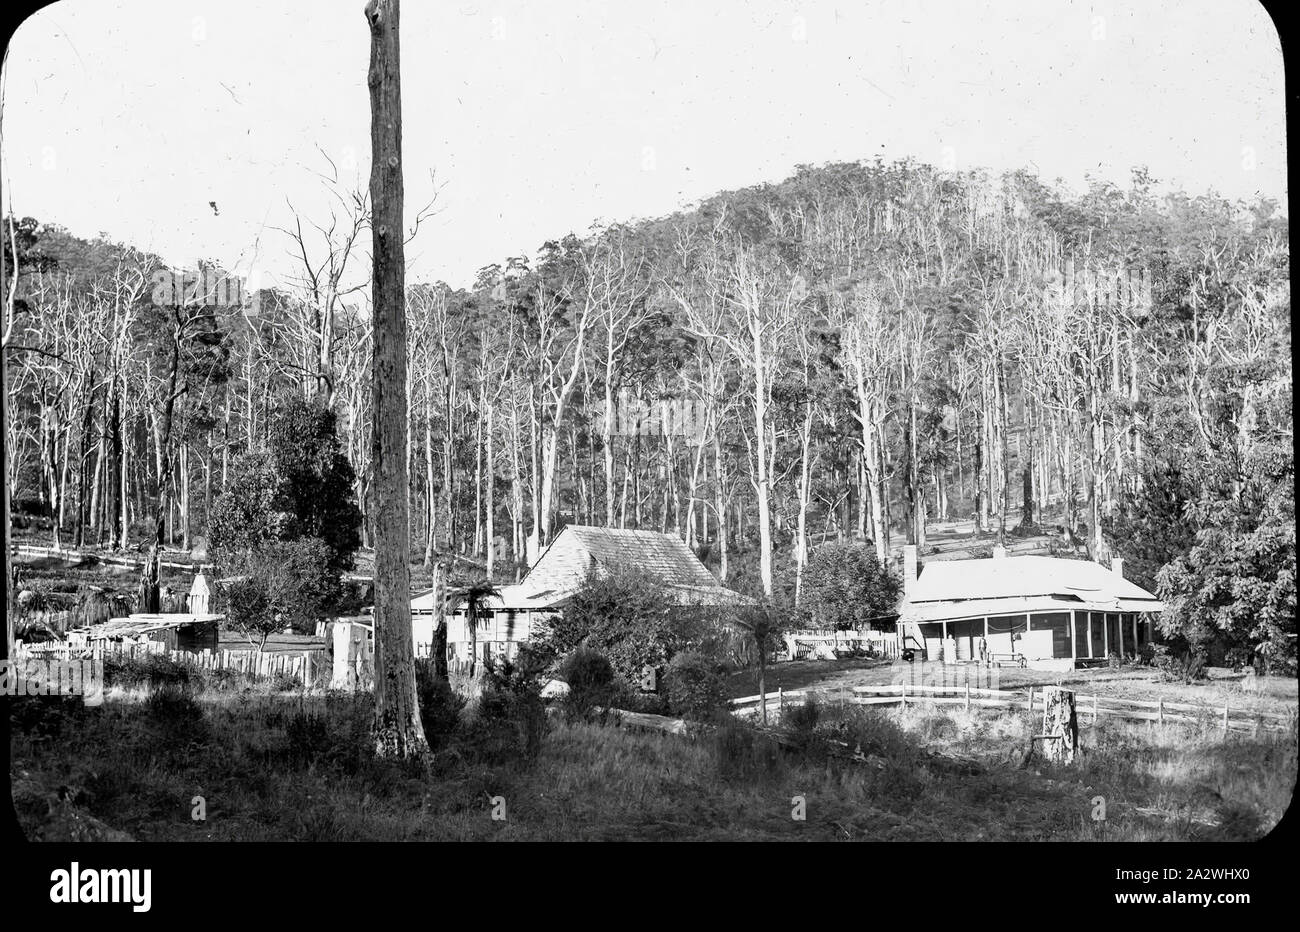 Diapositive - Hazel Dell Homestead, Australie, date inconnue, image en noir et blanc d'un homestead dans la brousse australienne Banque D'Images